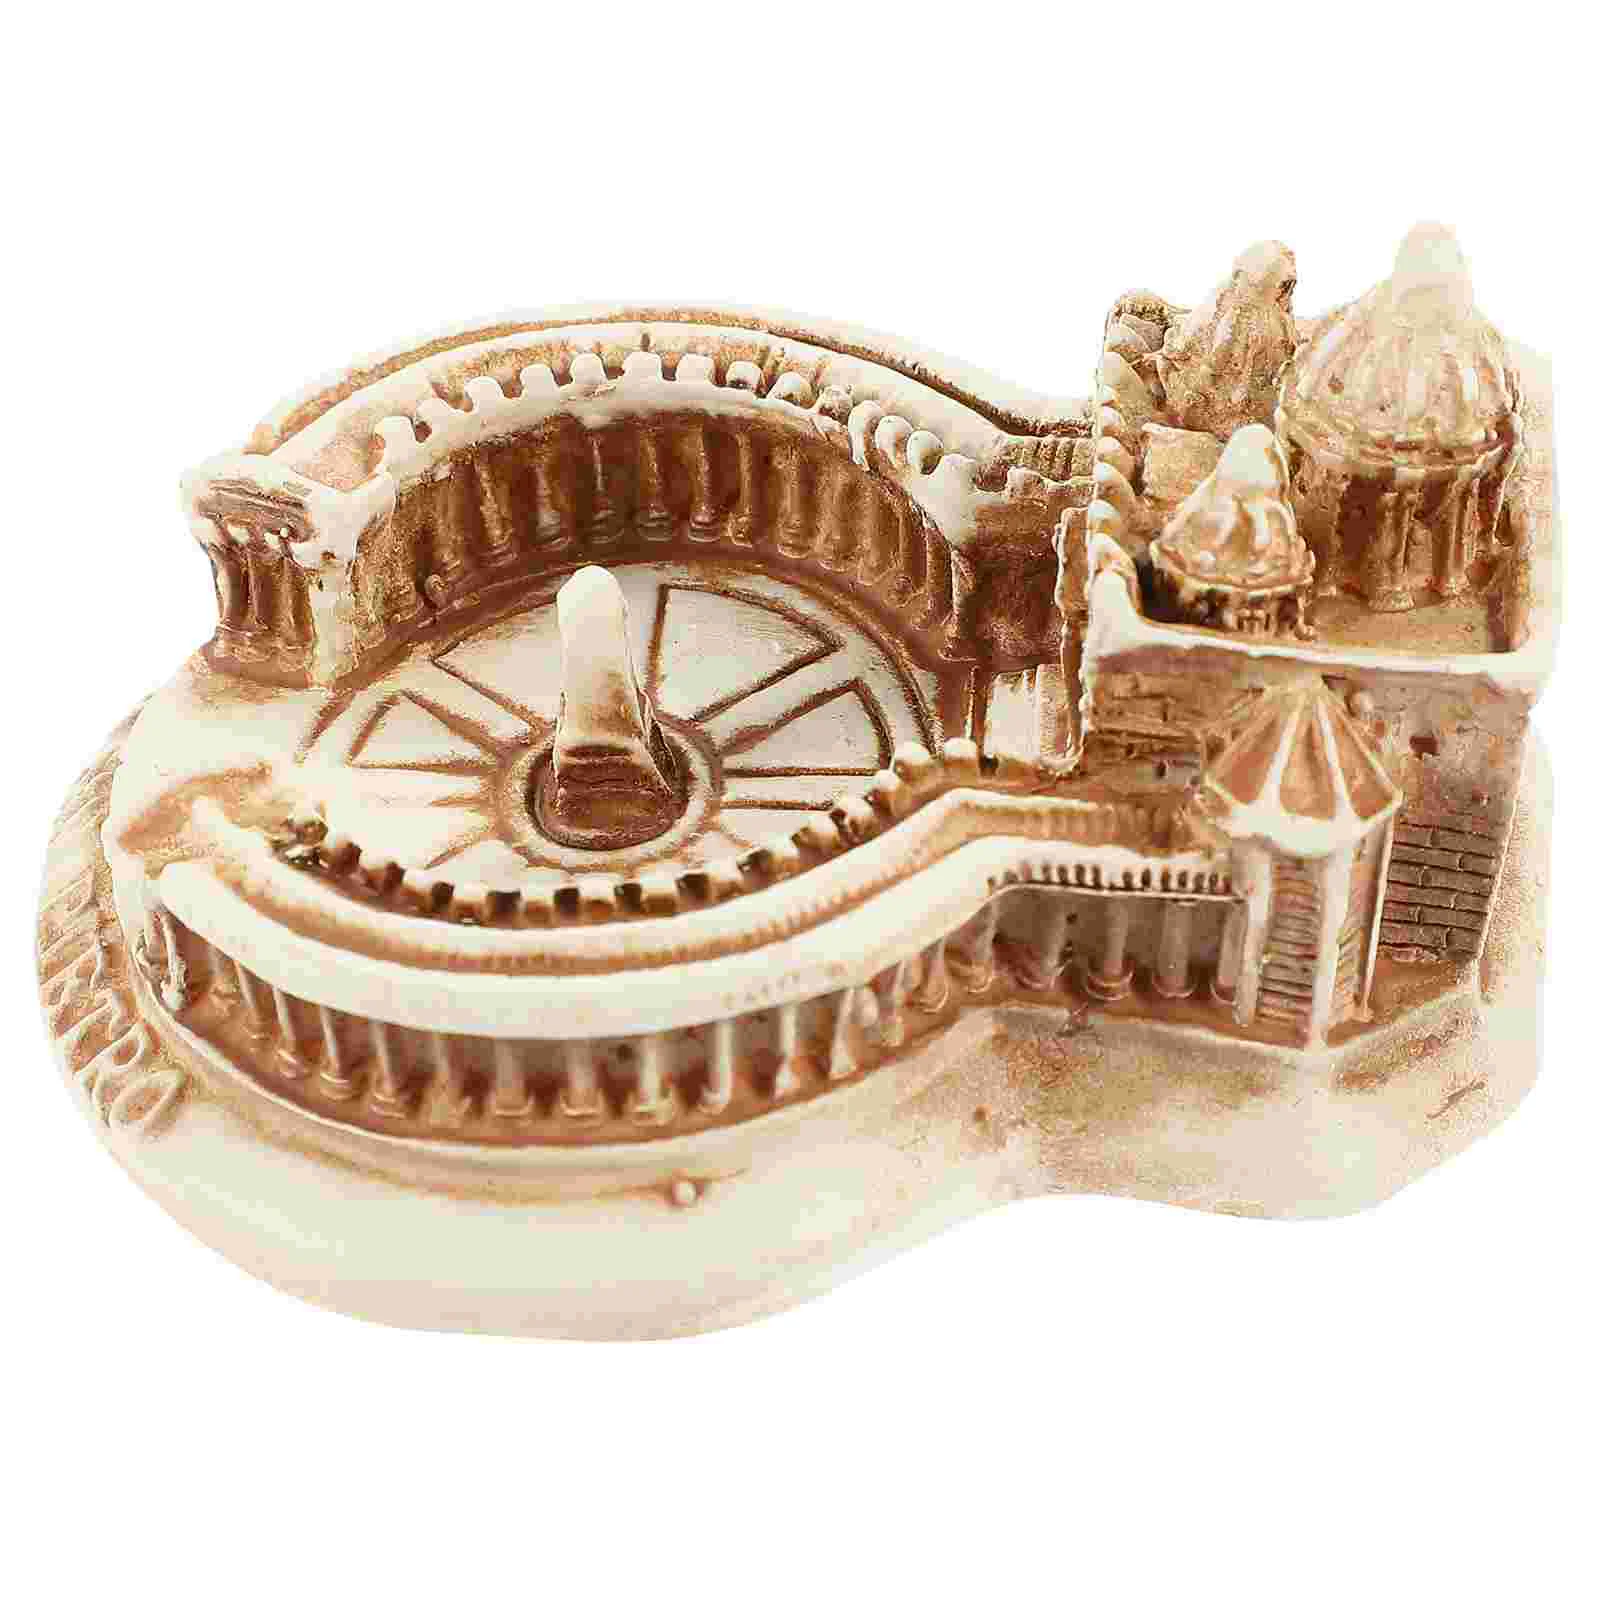 

Simulation Building Model Decorative Architectural Desktop Saint Peter's Basilica Home Supplies Models